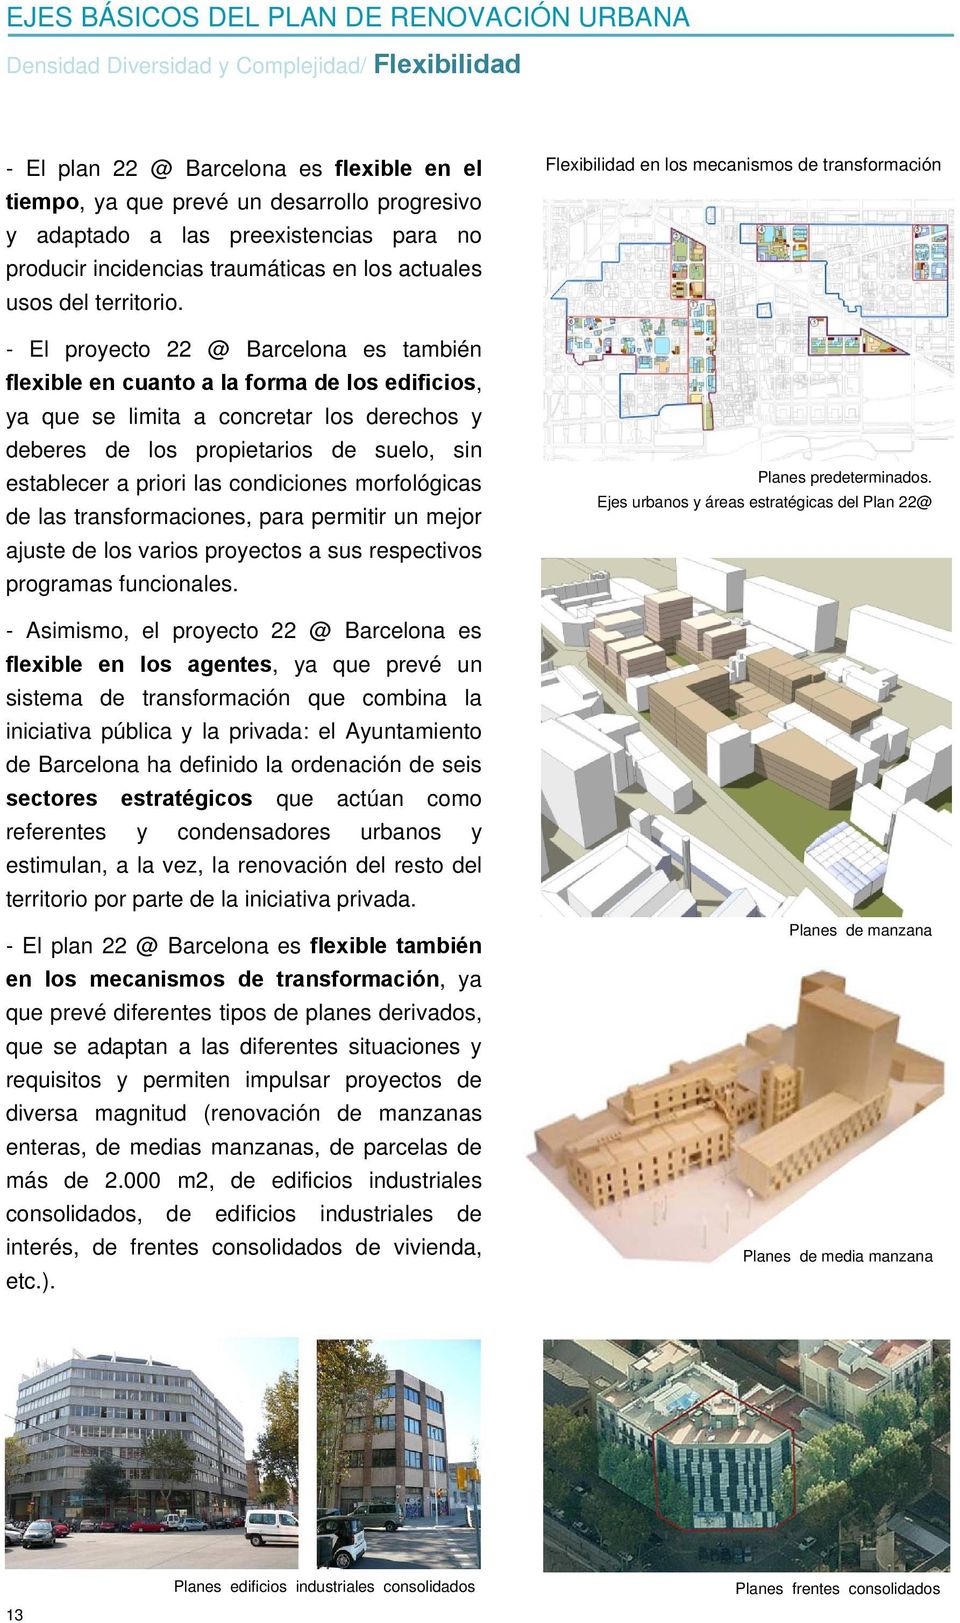 - El proyecto 22 @ Barcelona es también flexible en cuanto a la forma de los edificios, ya que se limita a concretar los derechos y deberes de los propietarios de suelo, sin establecer a priori las